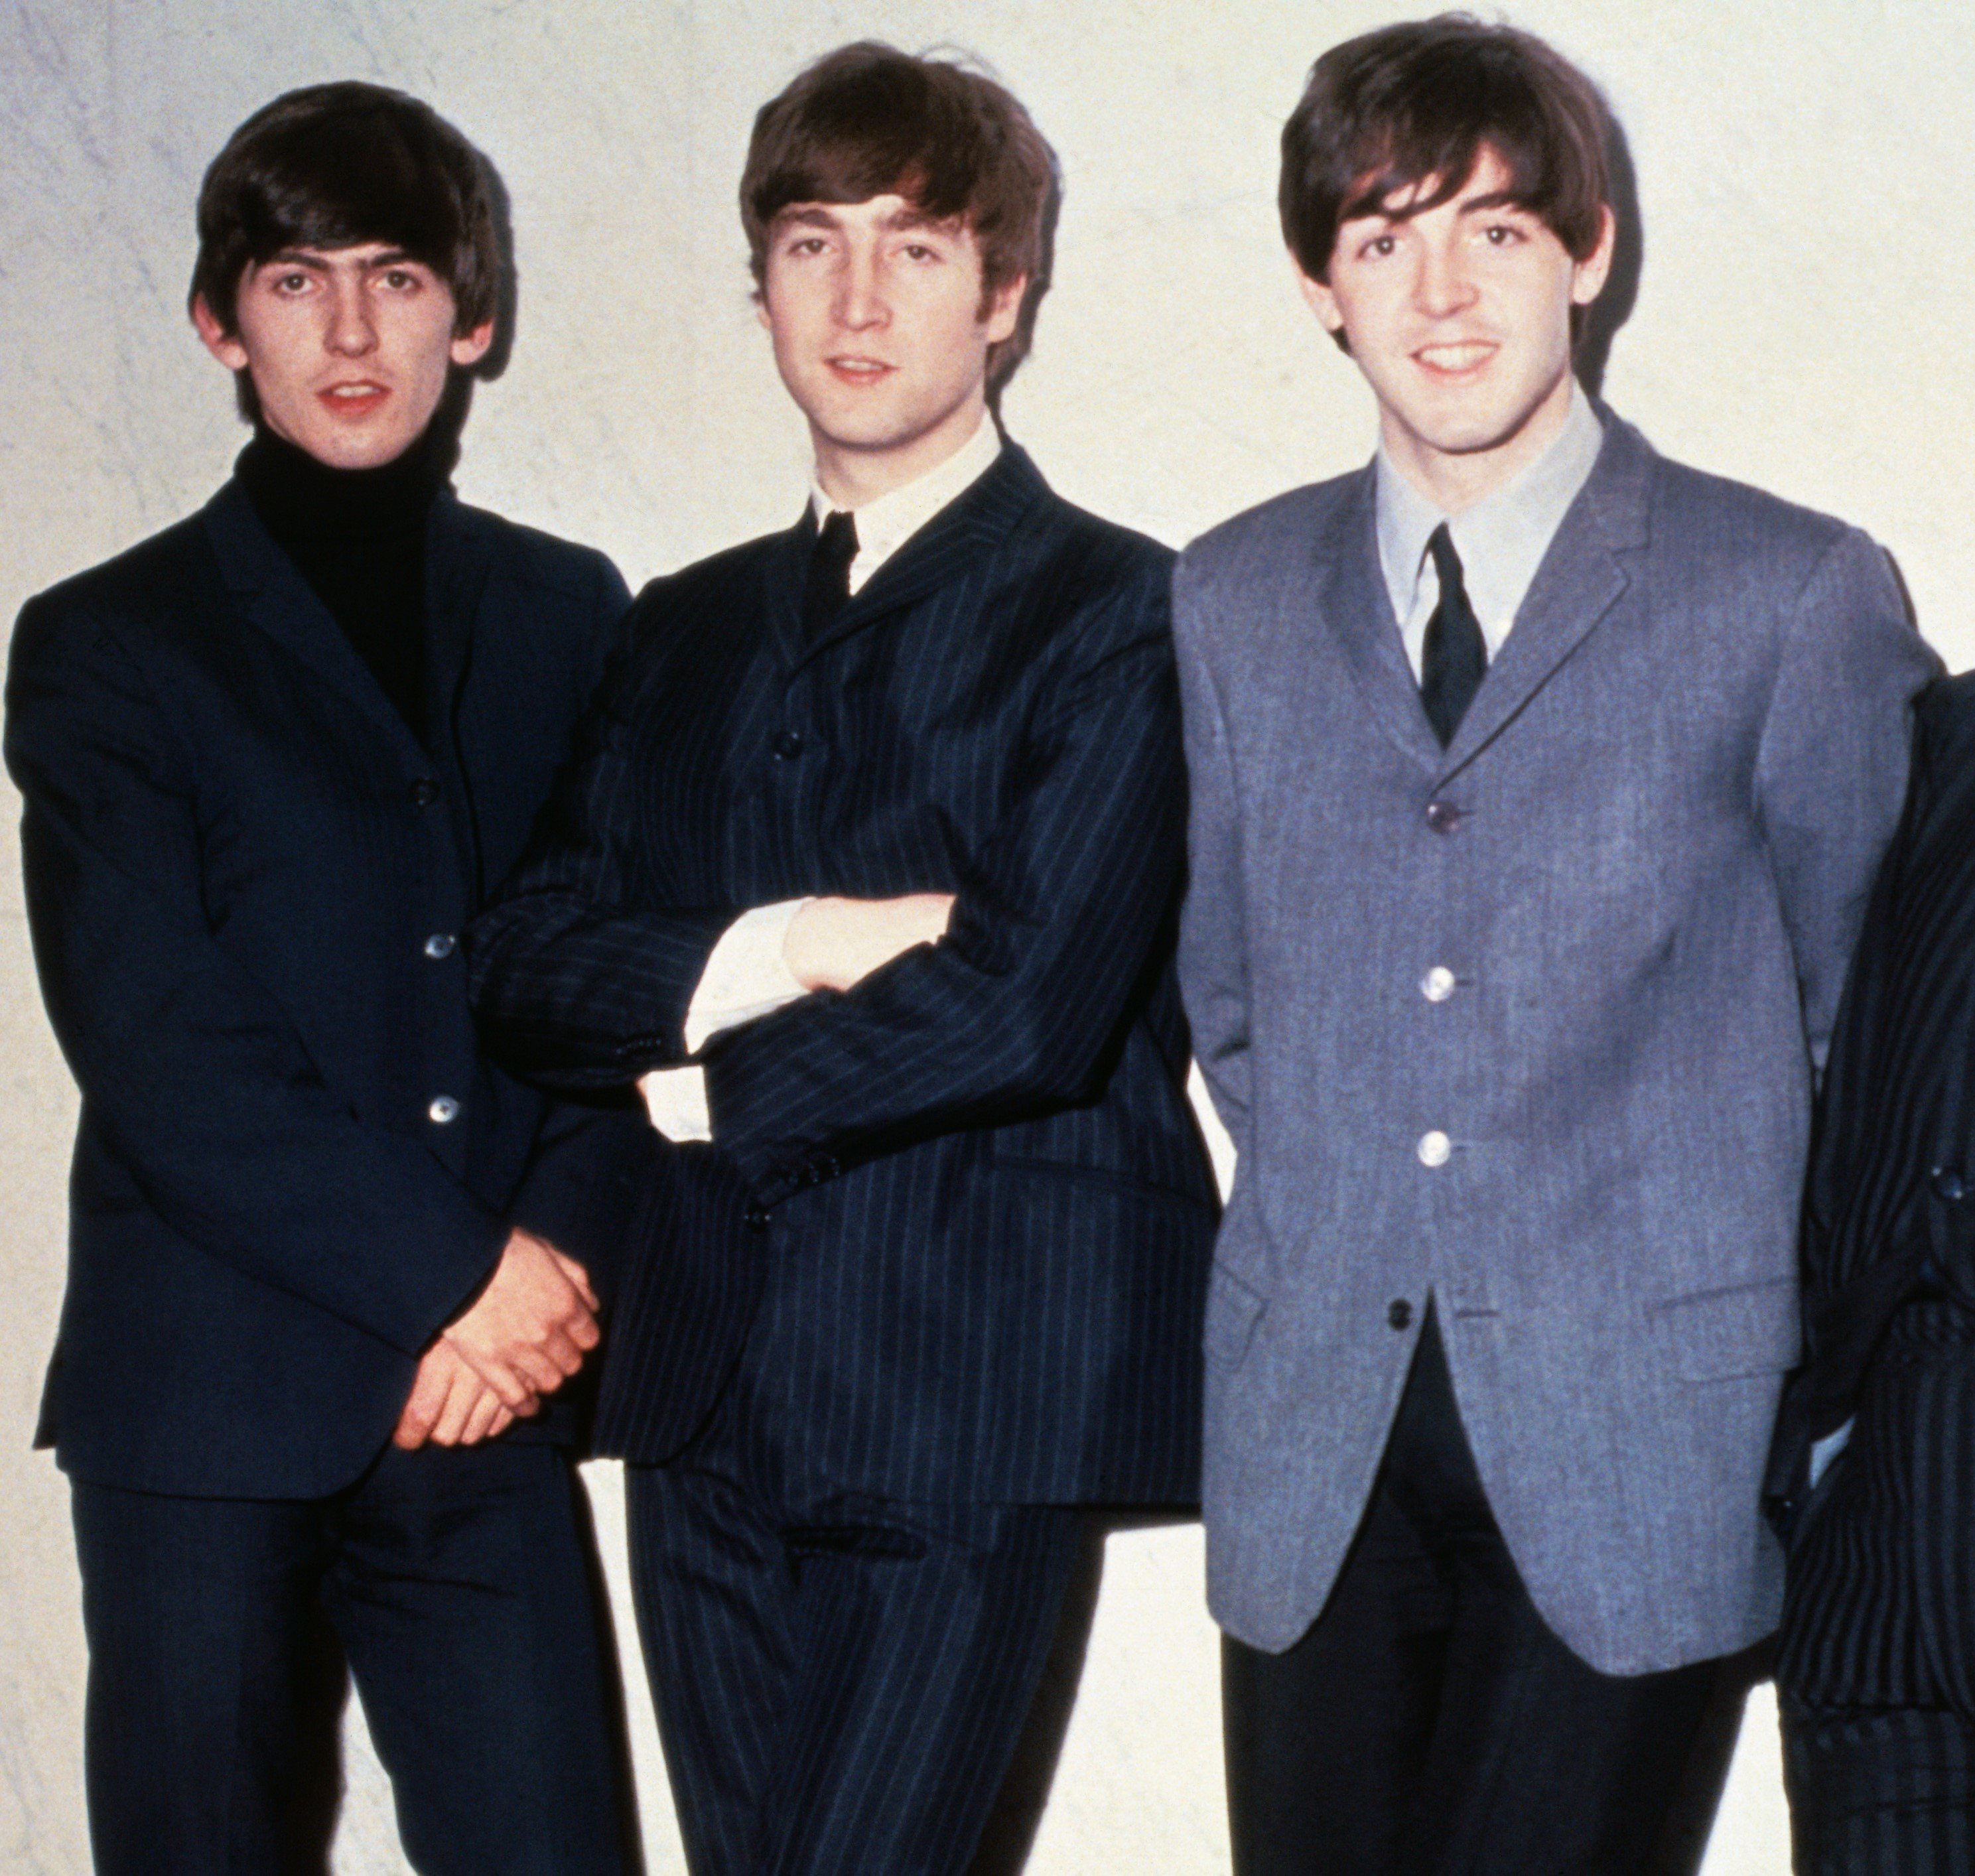 George Harrison, John Lennon und Paul McCartney von den Beatles in Anzügen